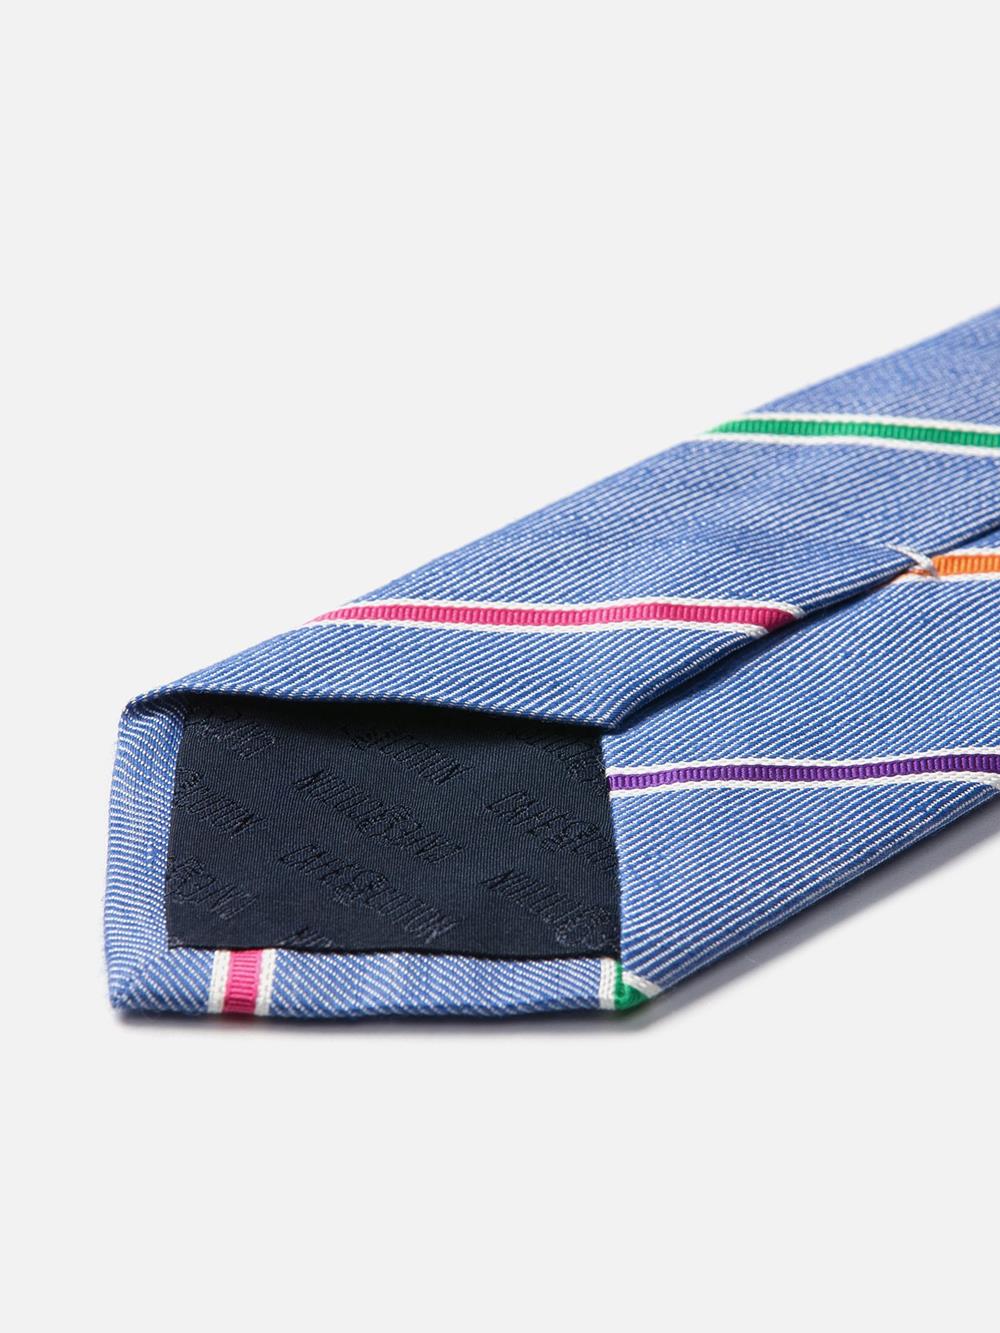 Cravate en soie et lin bleue à rayures multicolores